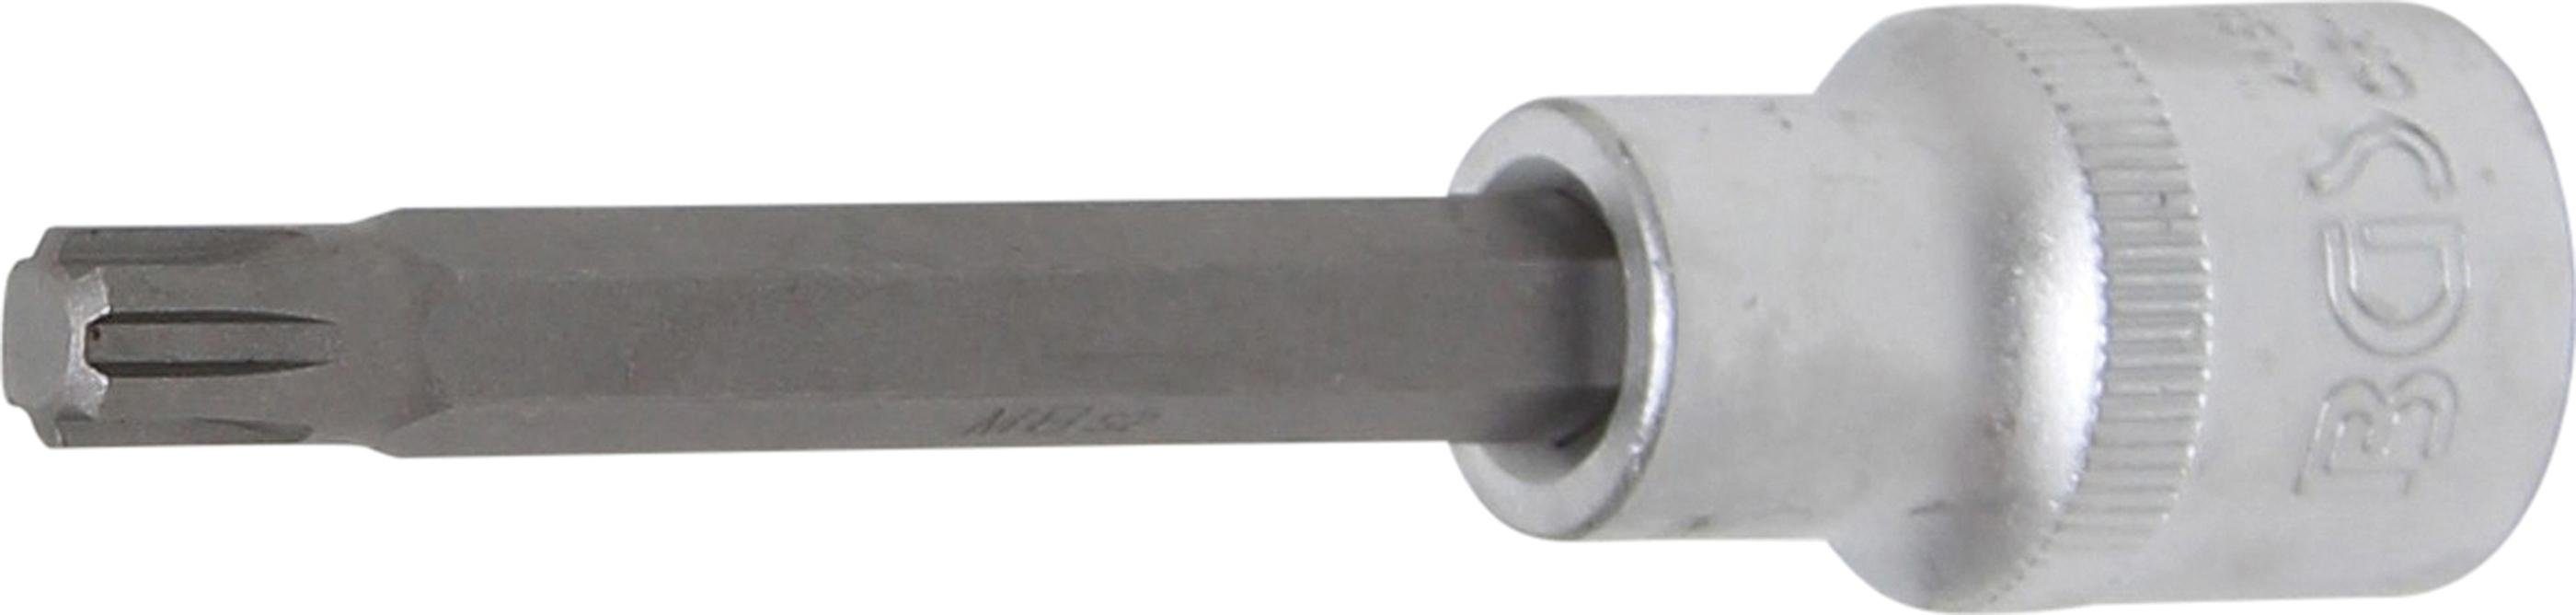 BGS technic Bit-Schraubendreher Bit-Einsatz, Länge 100 mm, Antrieb Innenvierkant 12,5 mm (1/2), Keil-Profil (für RIBE) M8